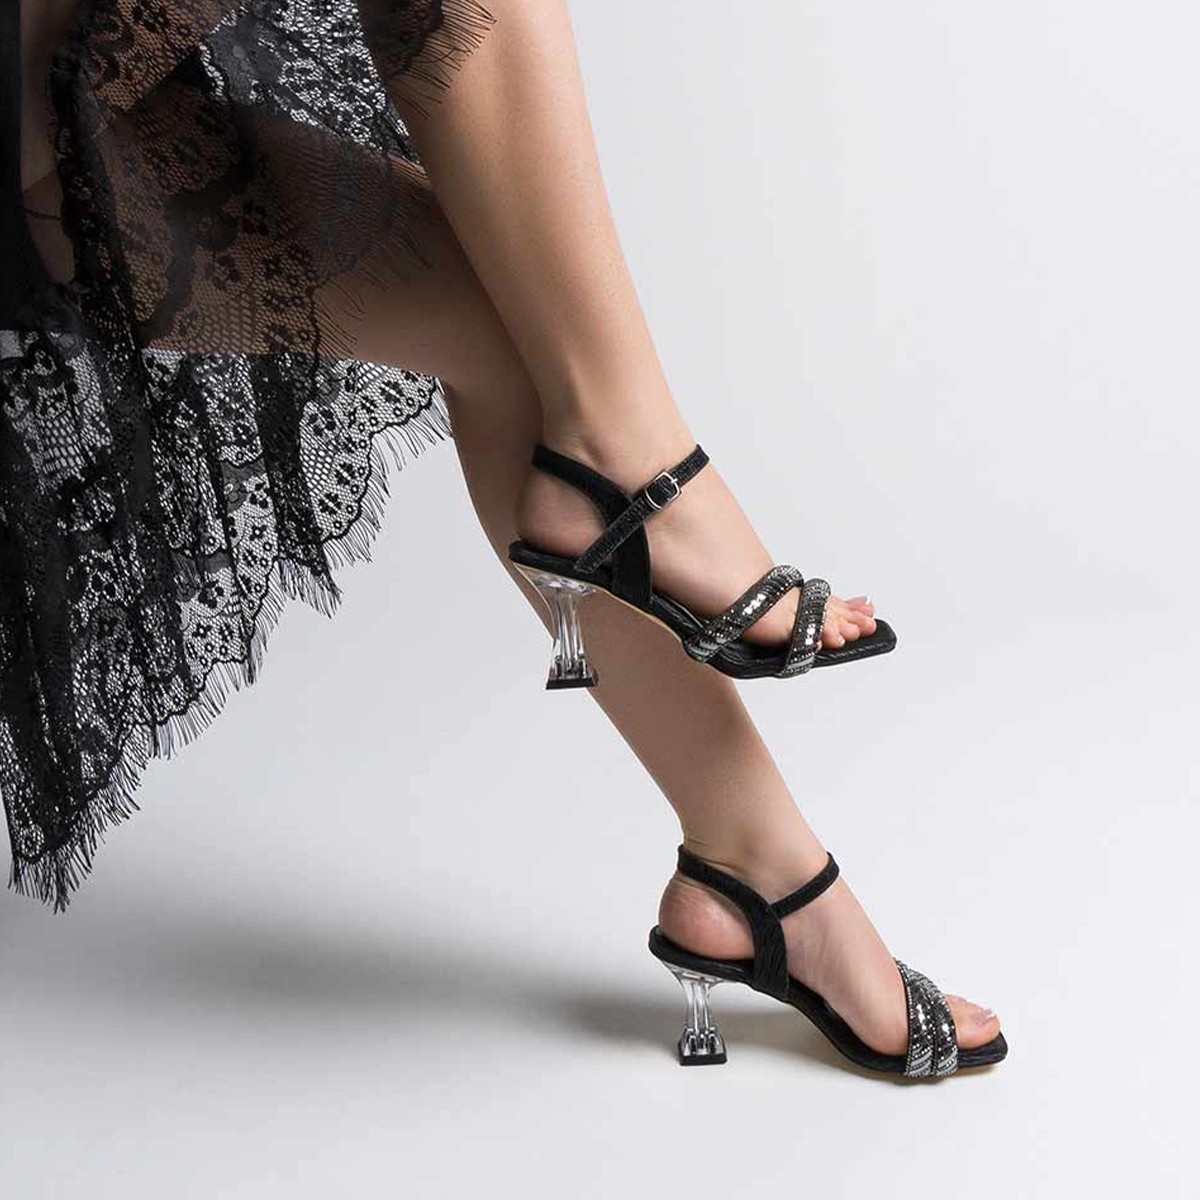 Tekstil Taşlı İnce Topuklu Ayakkabı - Siyah